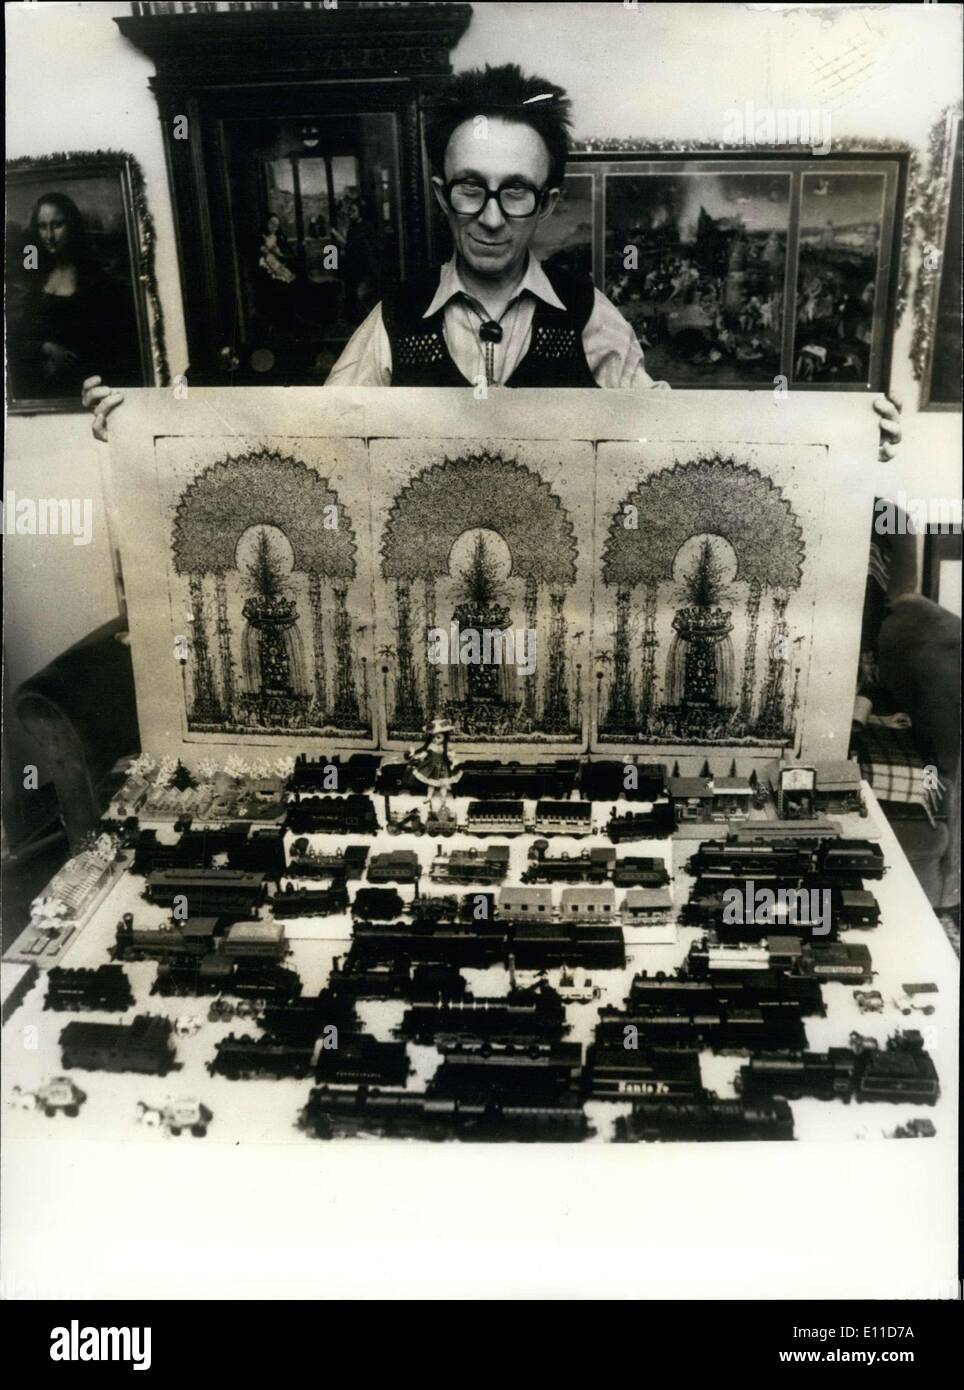 El 23 de febrero, 1977 - Durante veinte años, Hungría Arnold bruto trenes miniatura recopilados a partir todo el camino de vuelta a la invención de la máquina de vapor. Foto de stock